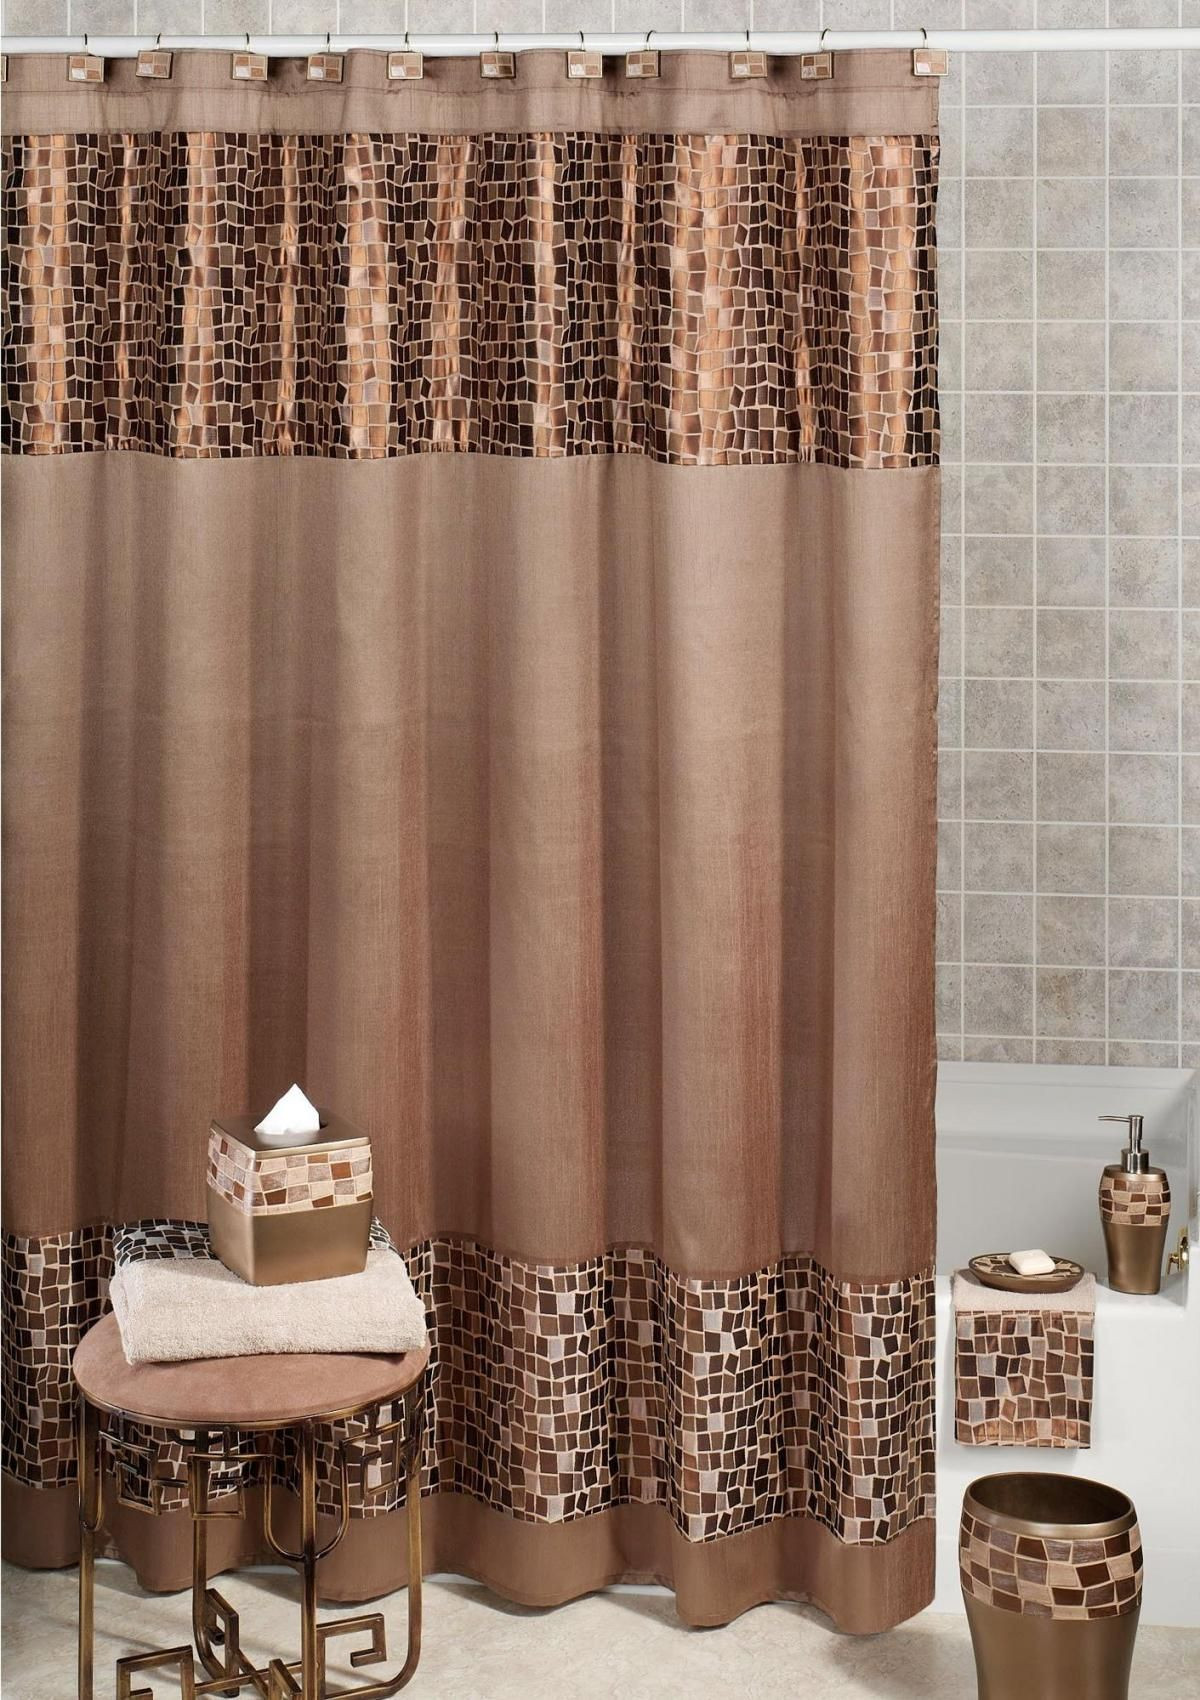 Elegant Bathroom Shower Curtains
 Remarkable Fabric Shower Curtains for Elegant Bathroom